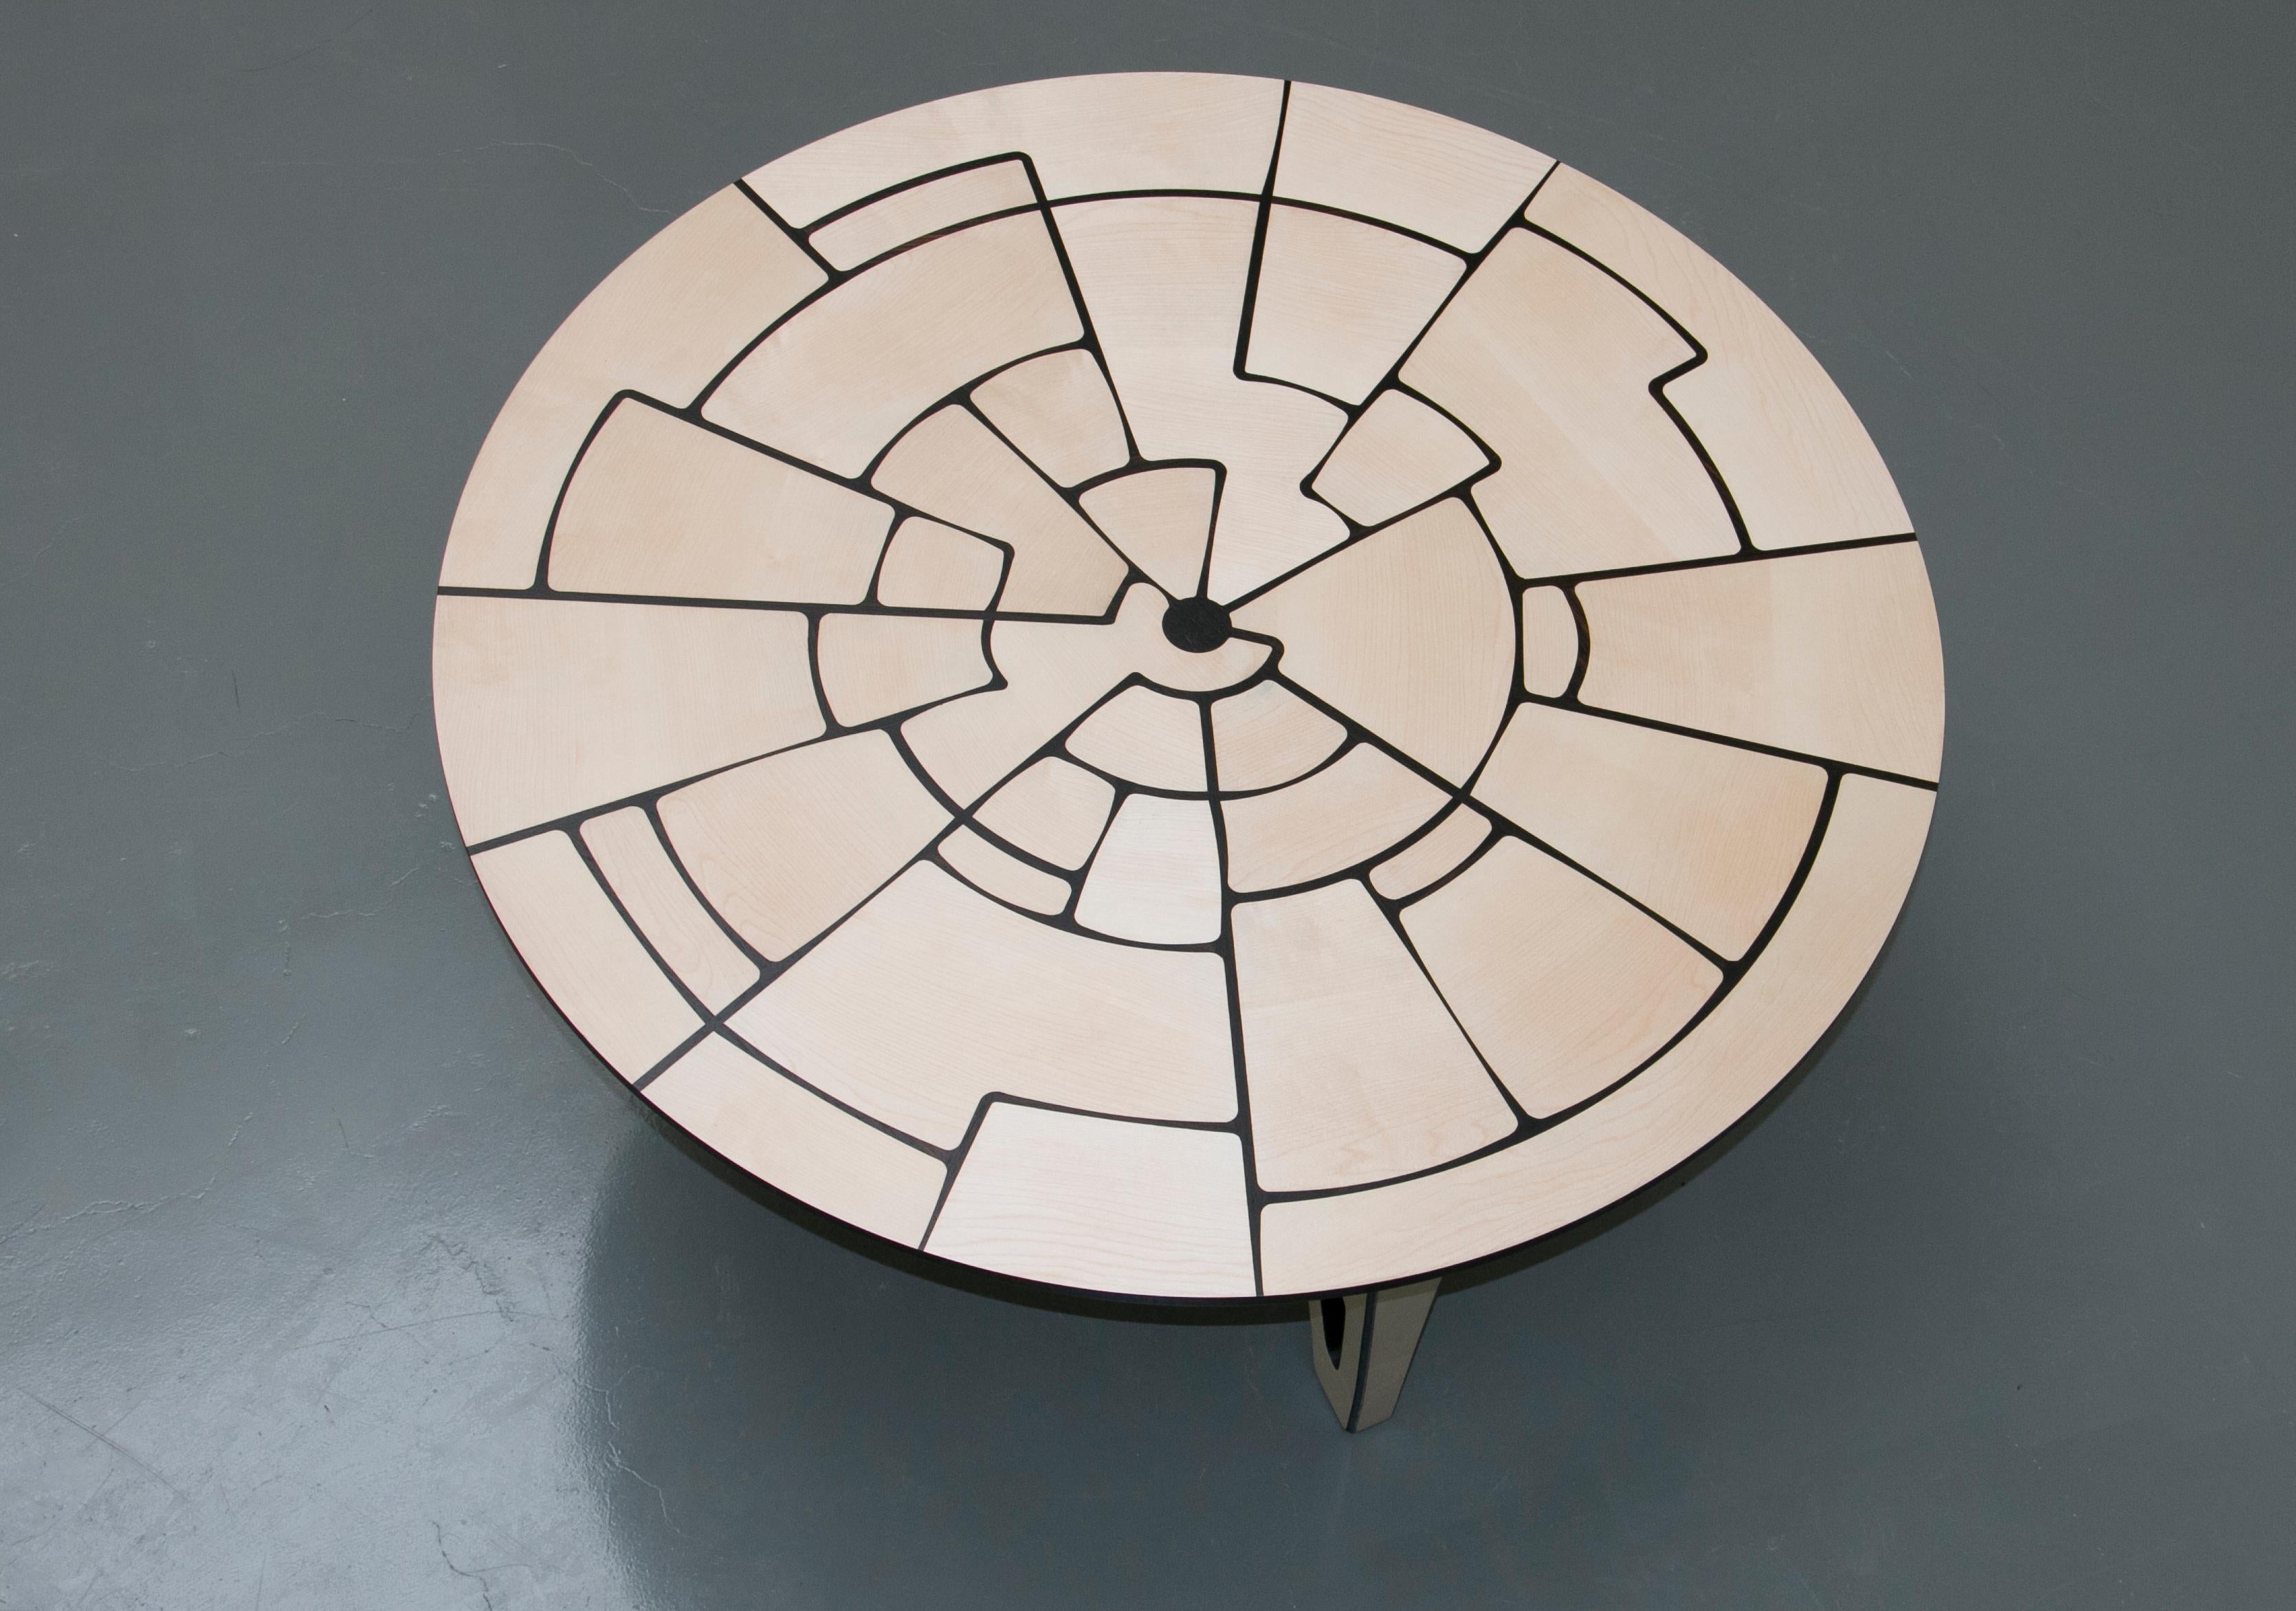 Presentada con éxito en la Semana del Diseño de Milán 2019, esta mesa hecha a mano con la técnica tradicional de la taracea fue concebida por Ivan Paradisi con la idea de un intrincado patrón geométrico que revela una serie de 